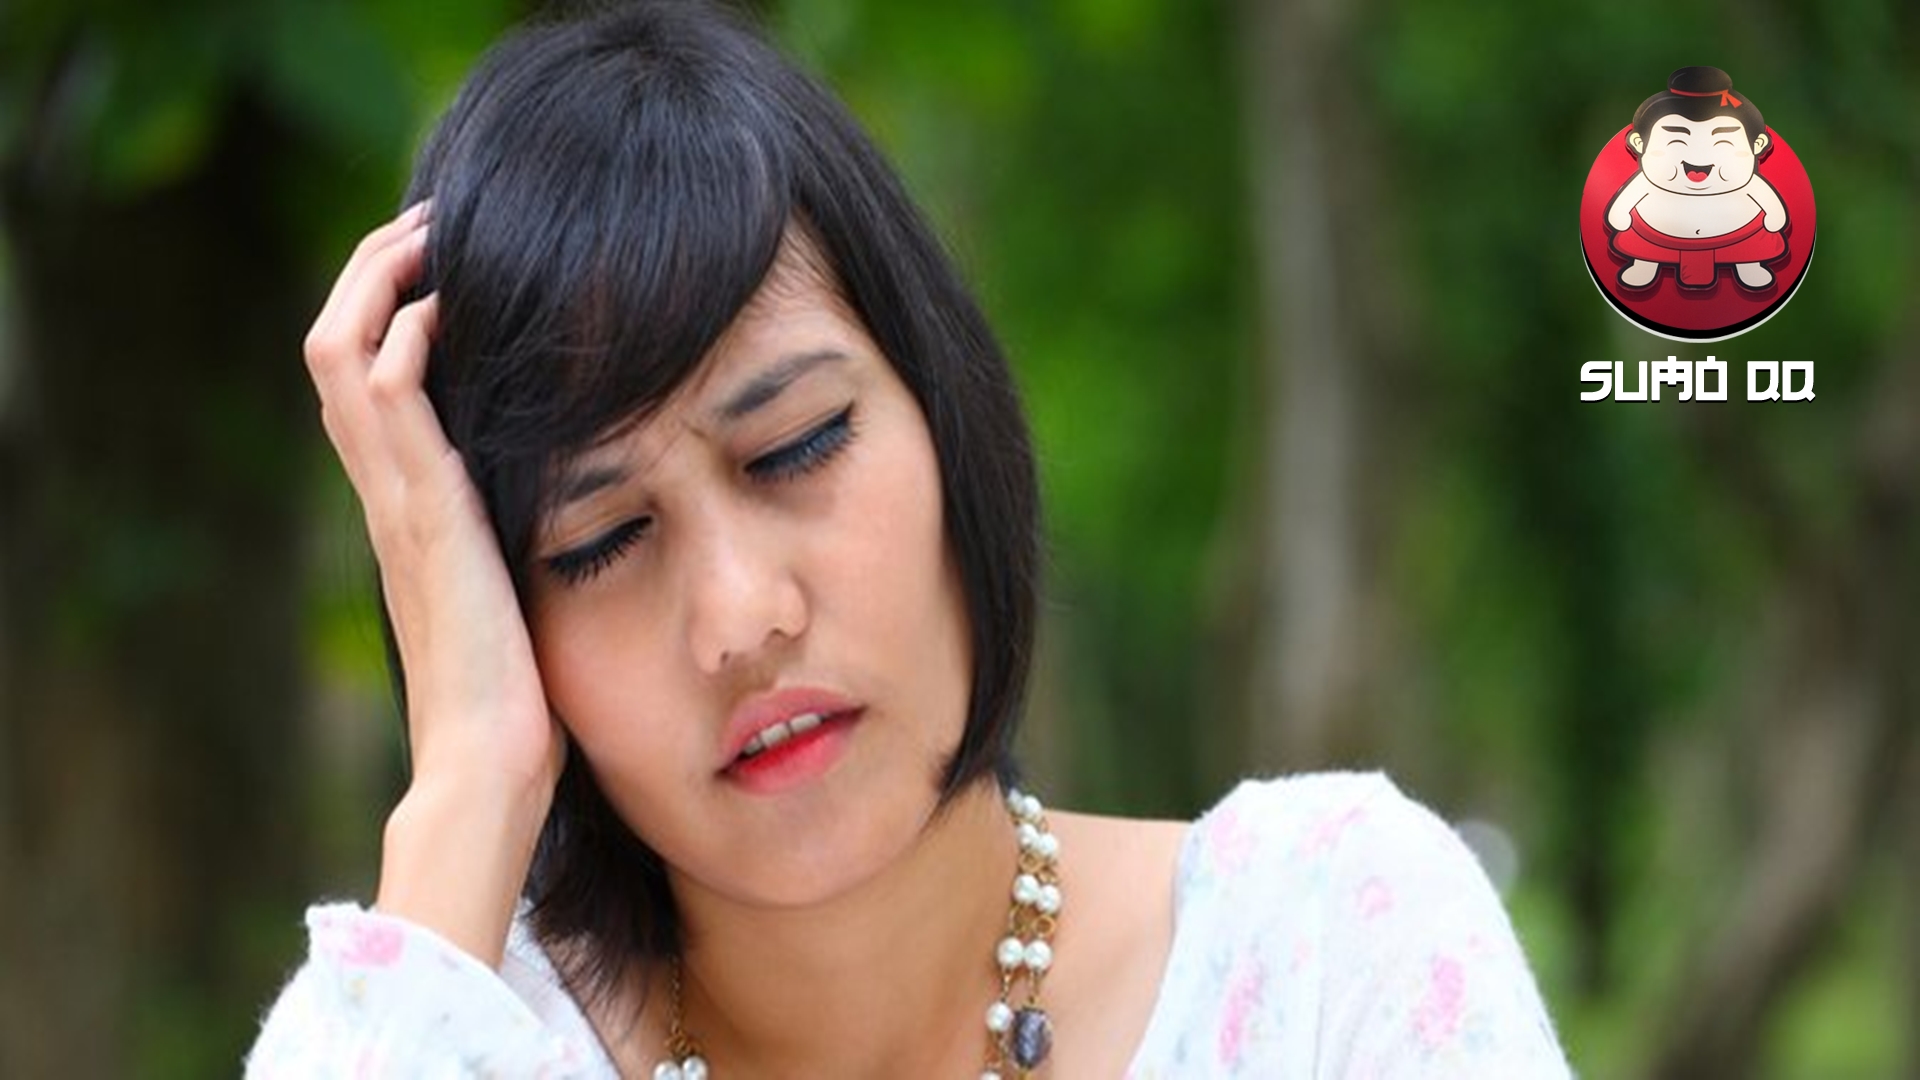 5 Hal Mencegah Timbulnya Migrain